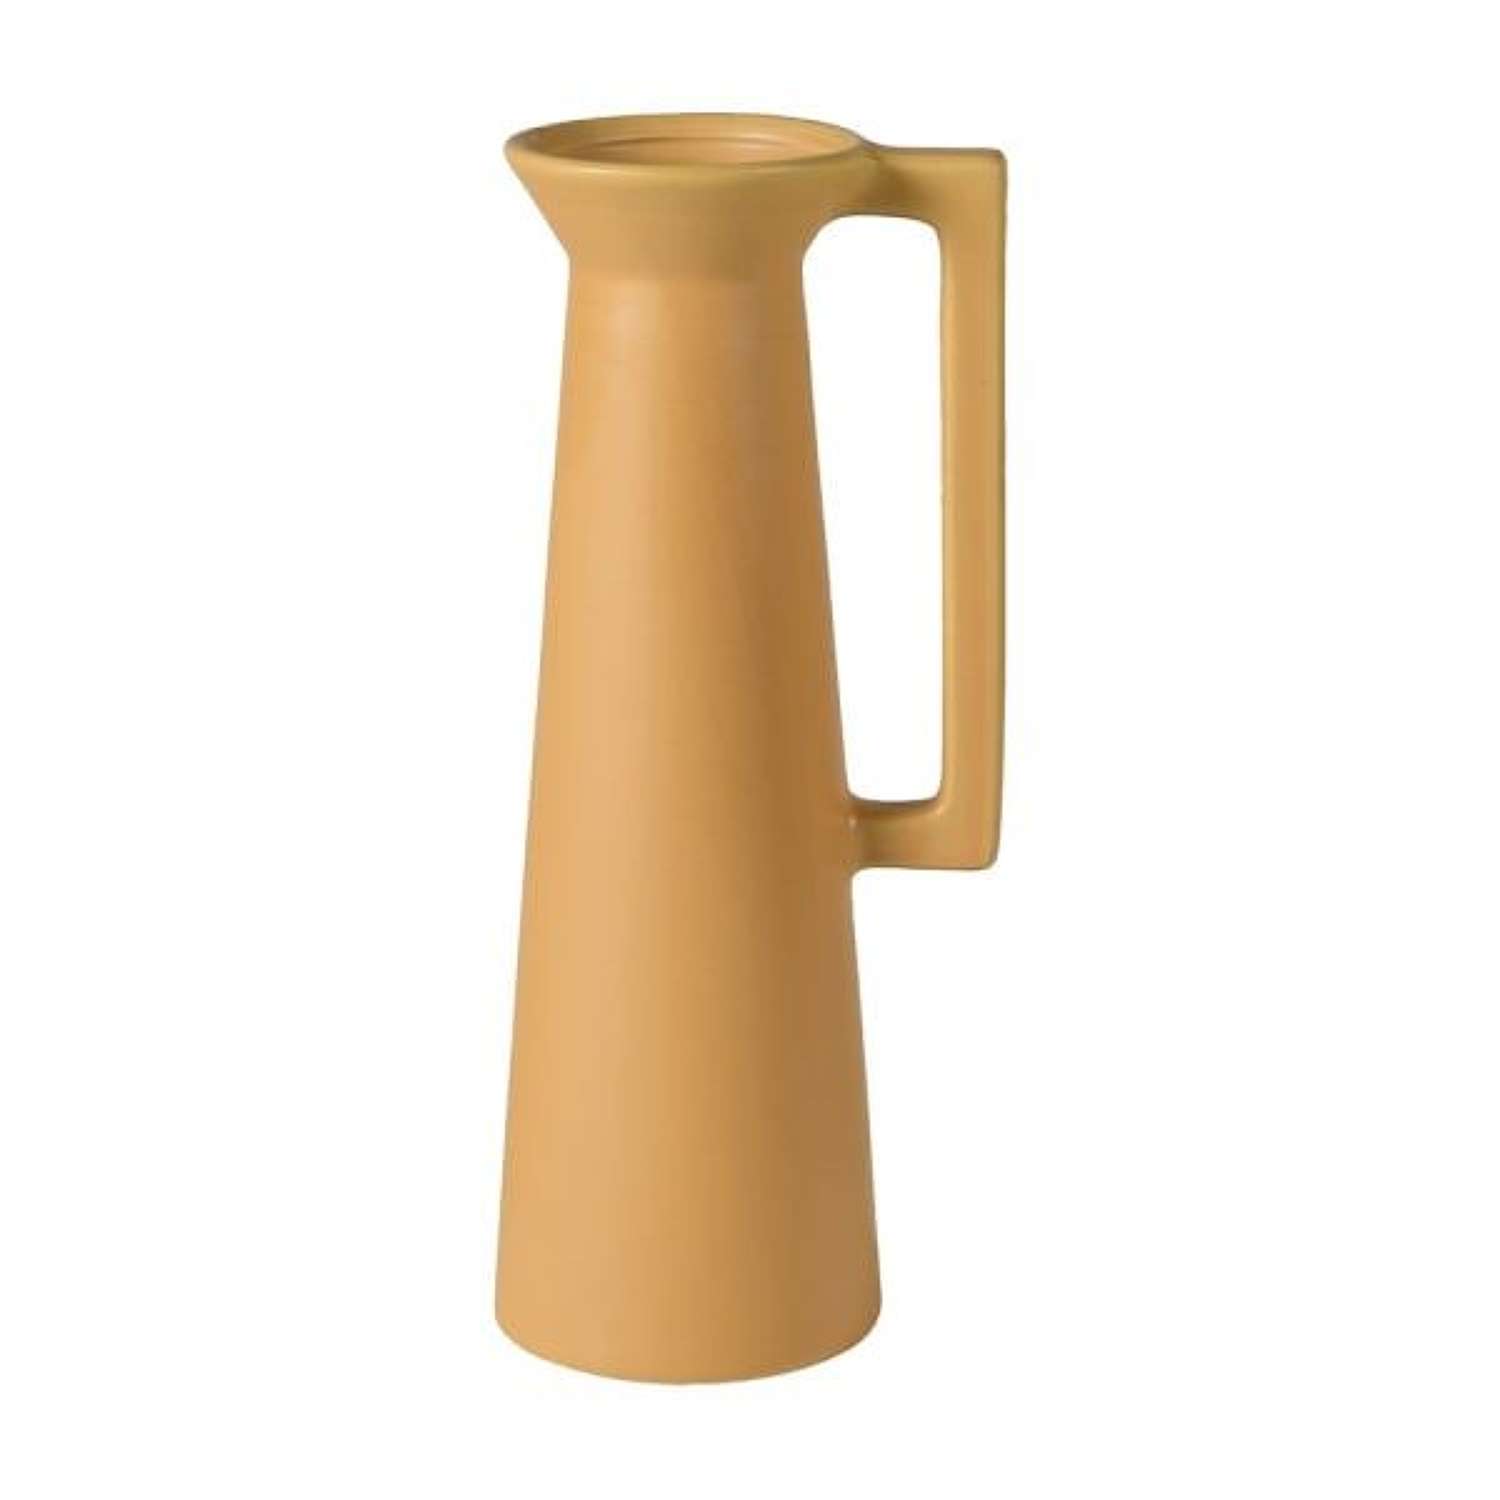 Slim Mustard Ceramic Vase - Ref MPC063